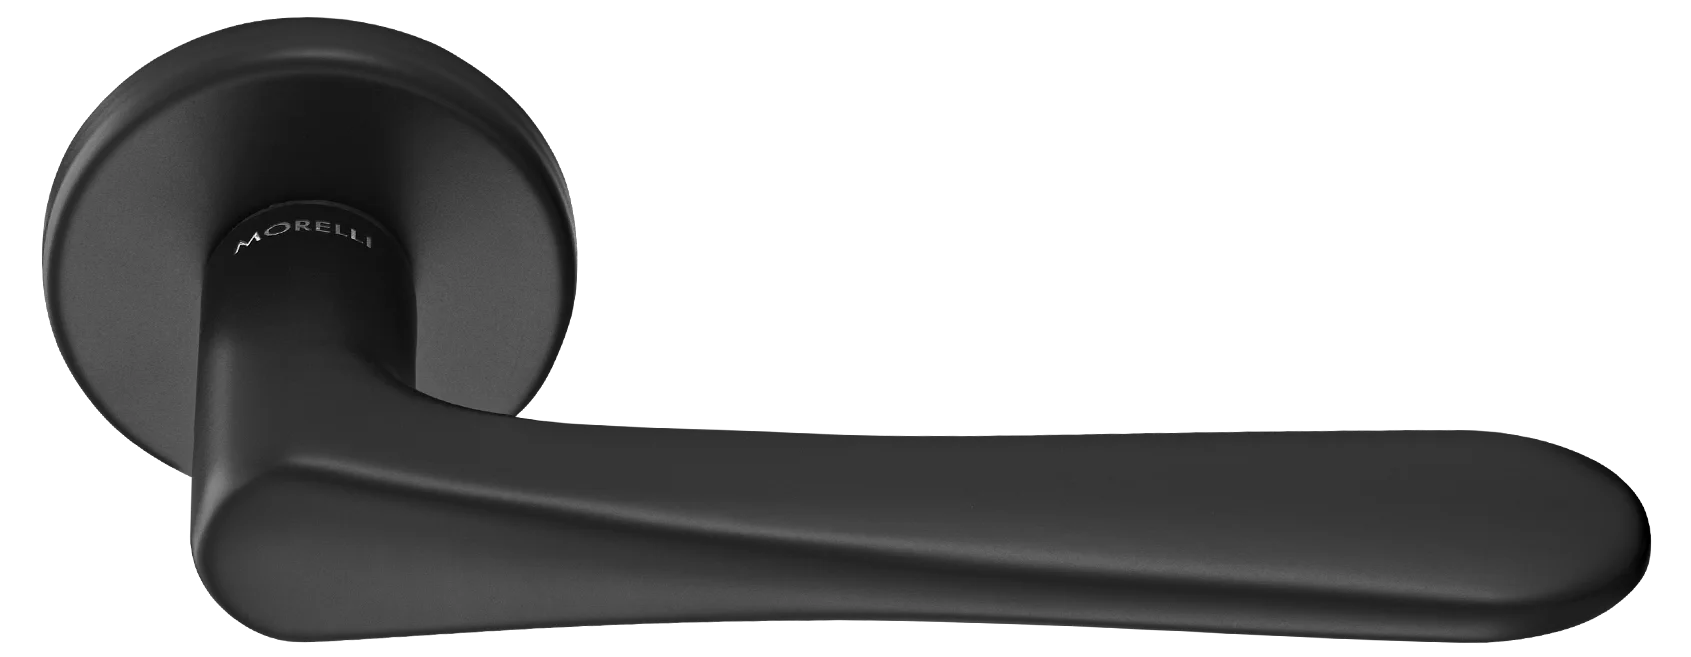 AULA R5 NERO, ручка дверная на розетке 7мм, цвет -  черный фото купить Кемерово